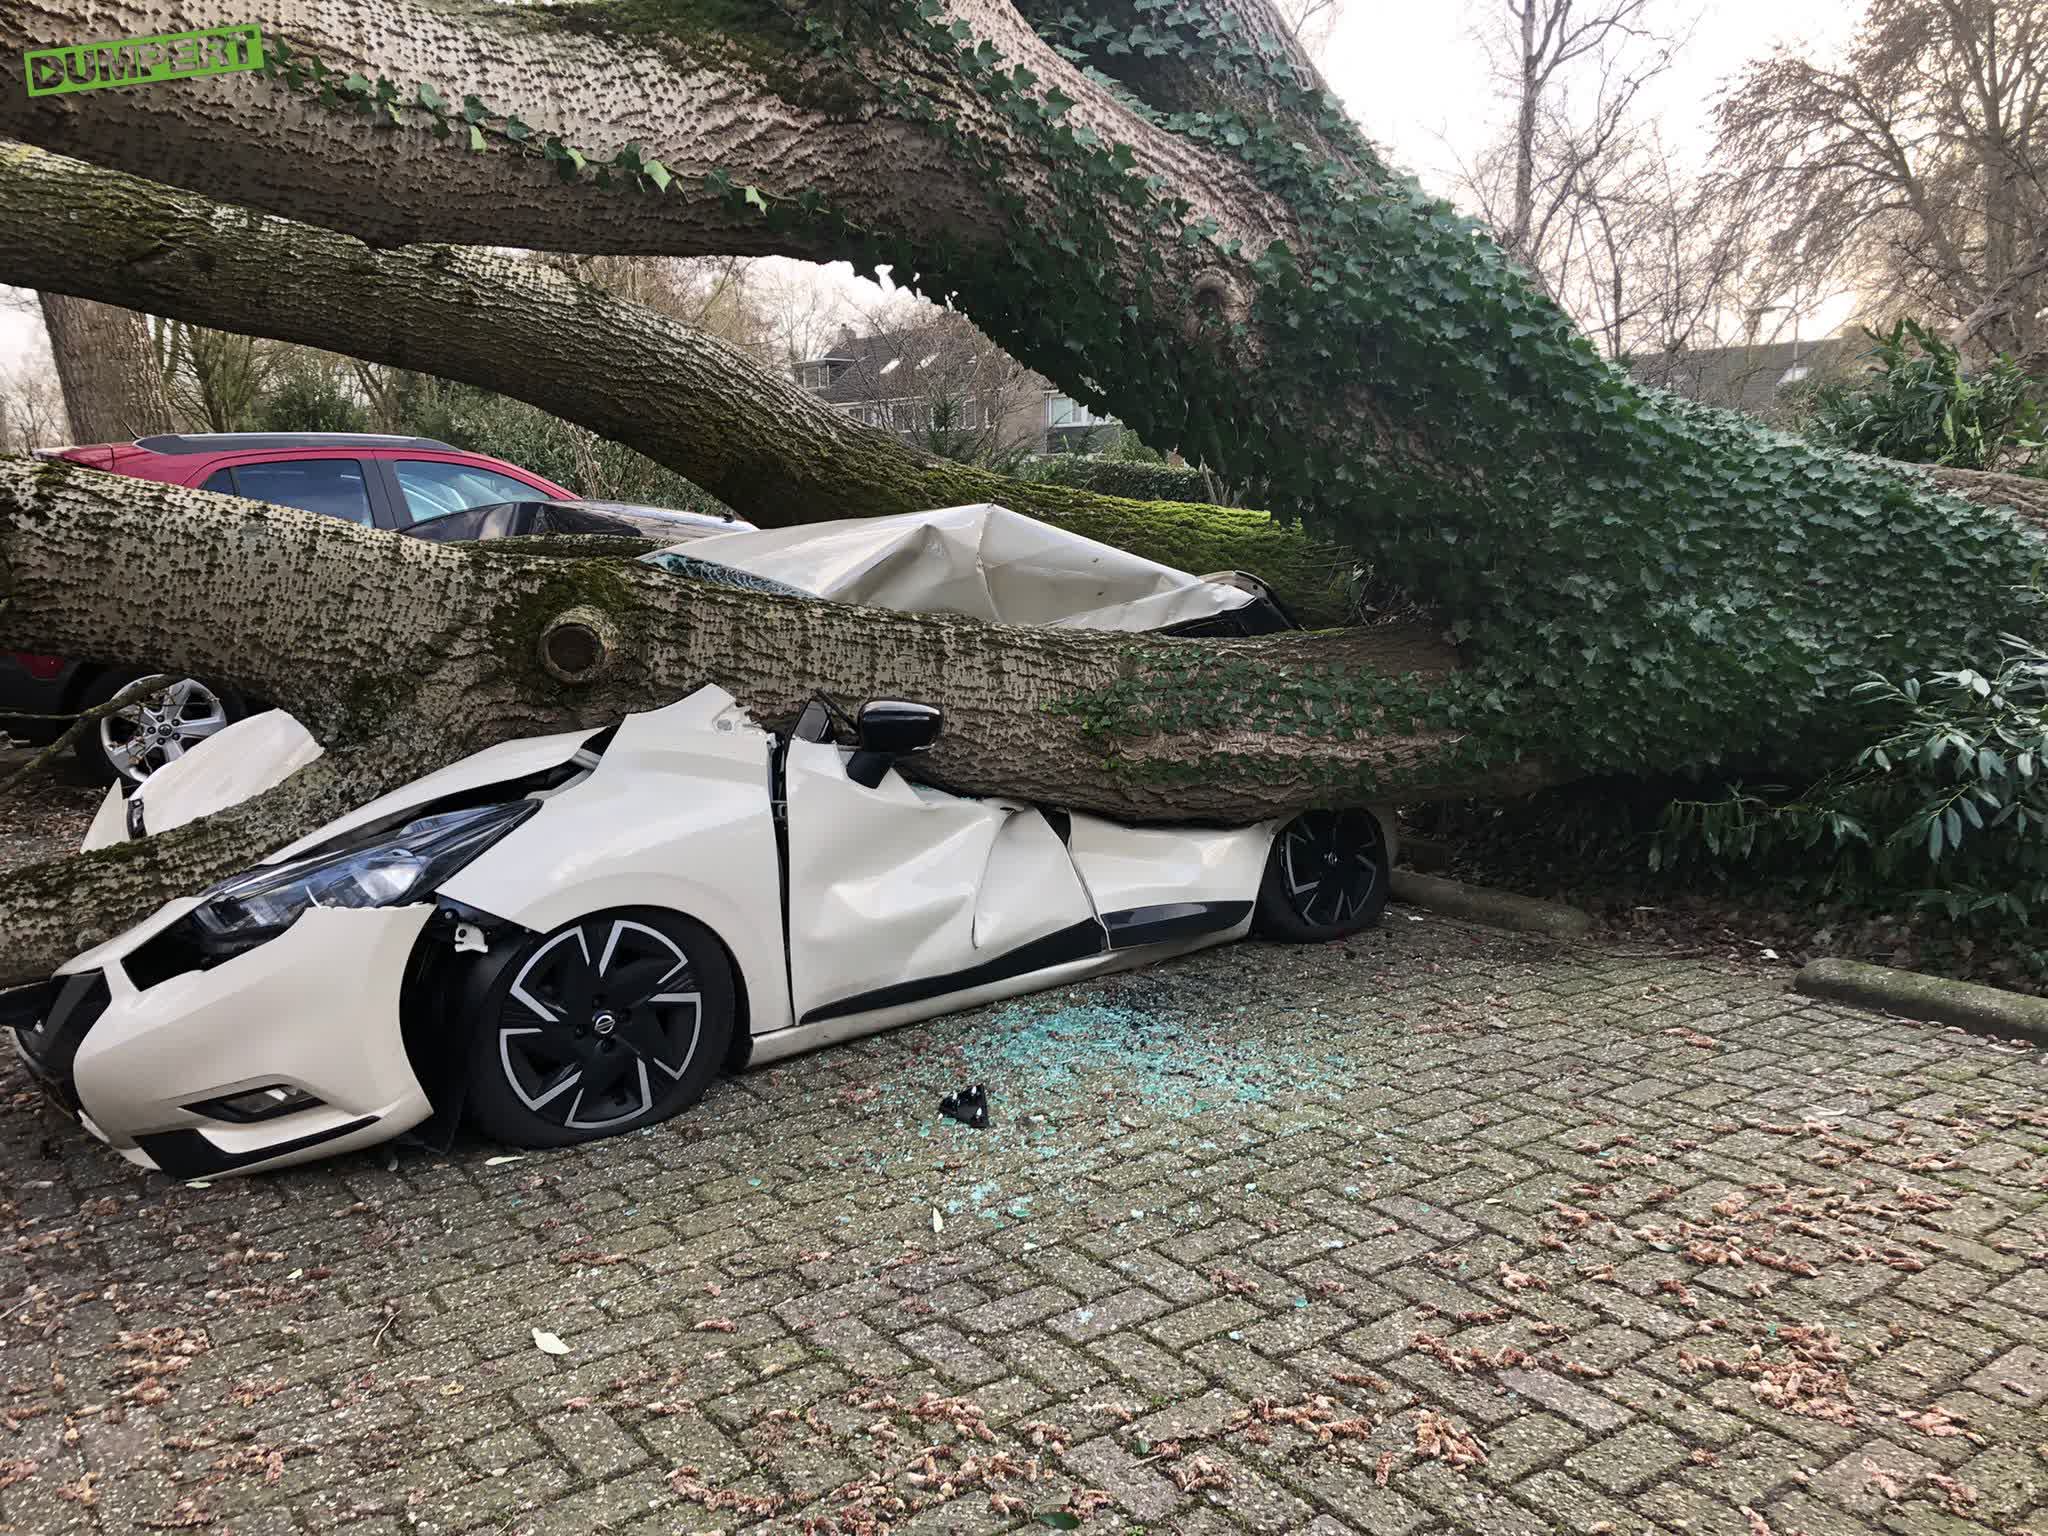 Grootste boom van Nederland op m’n auto